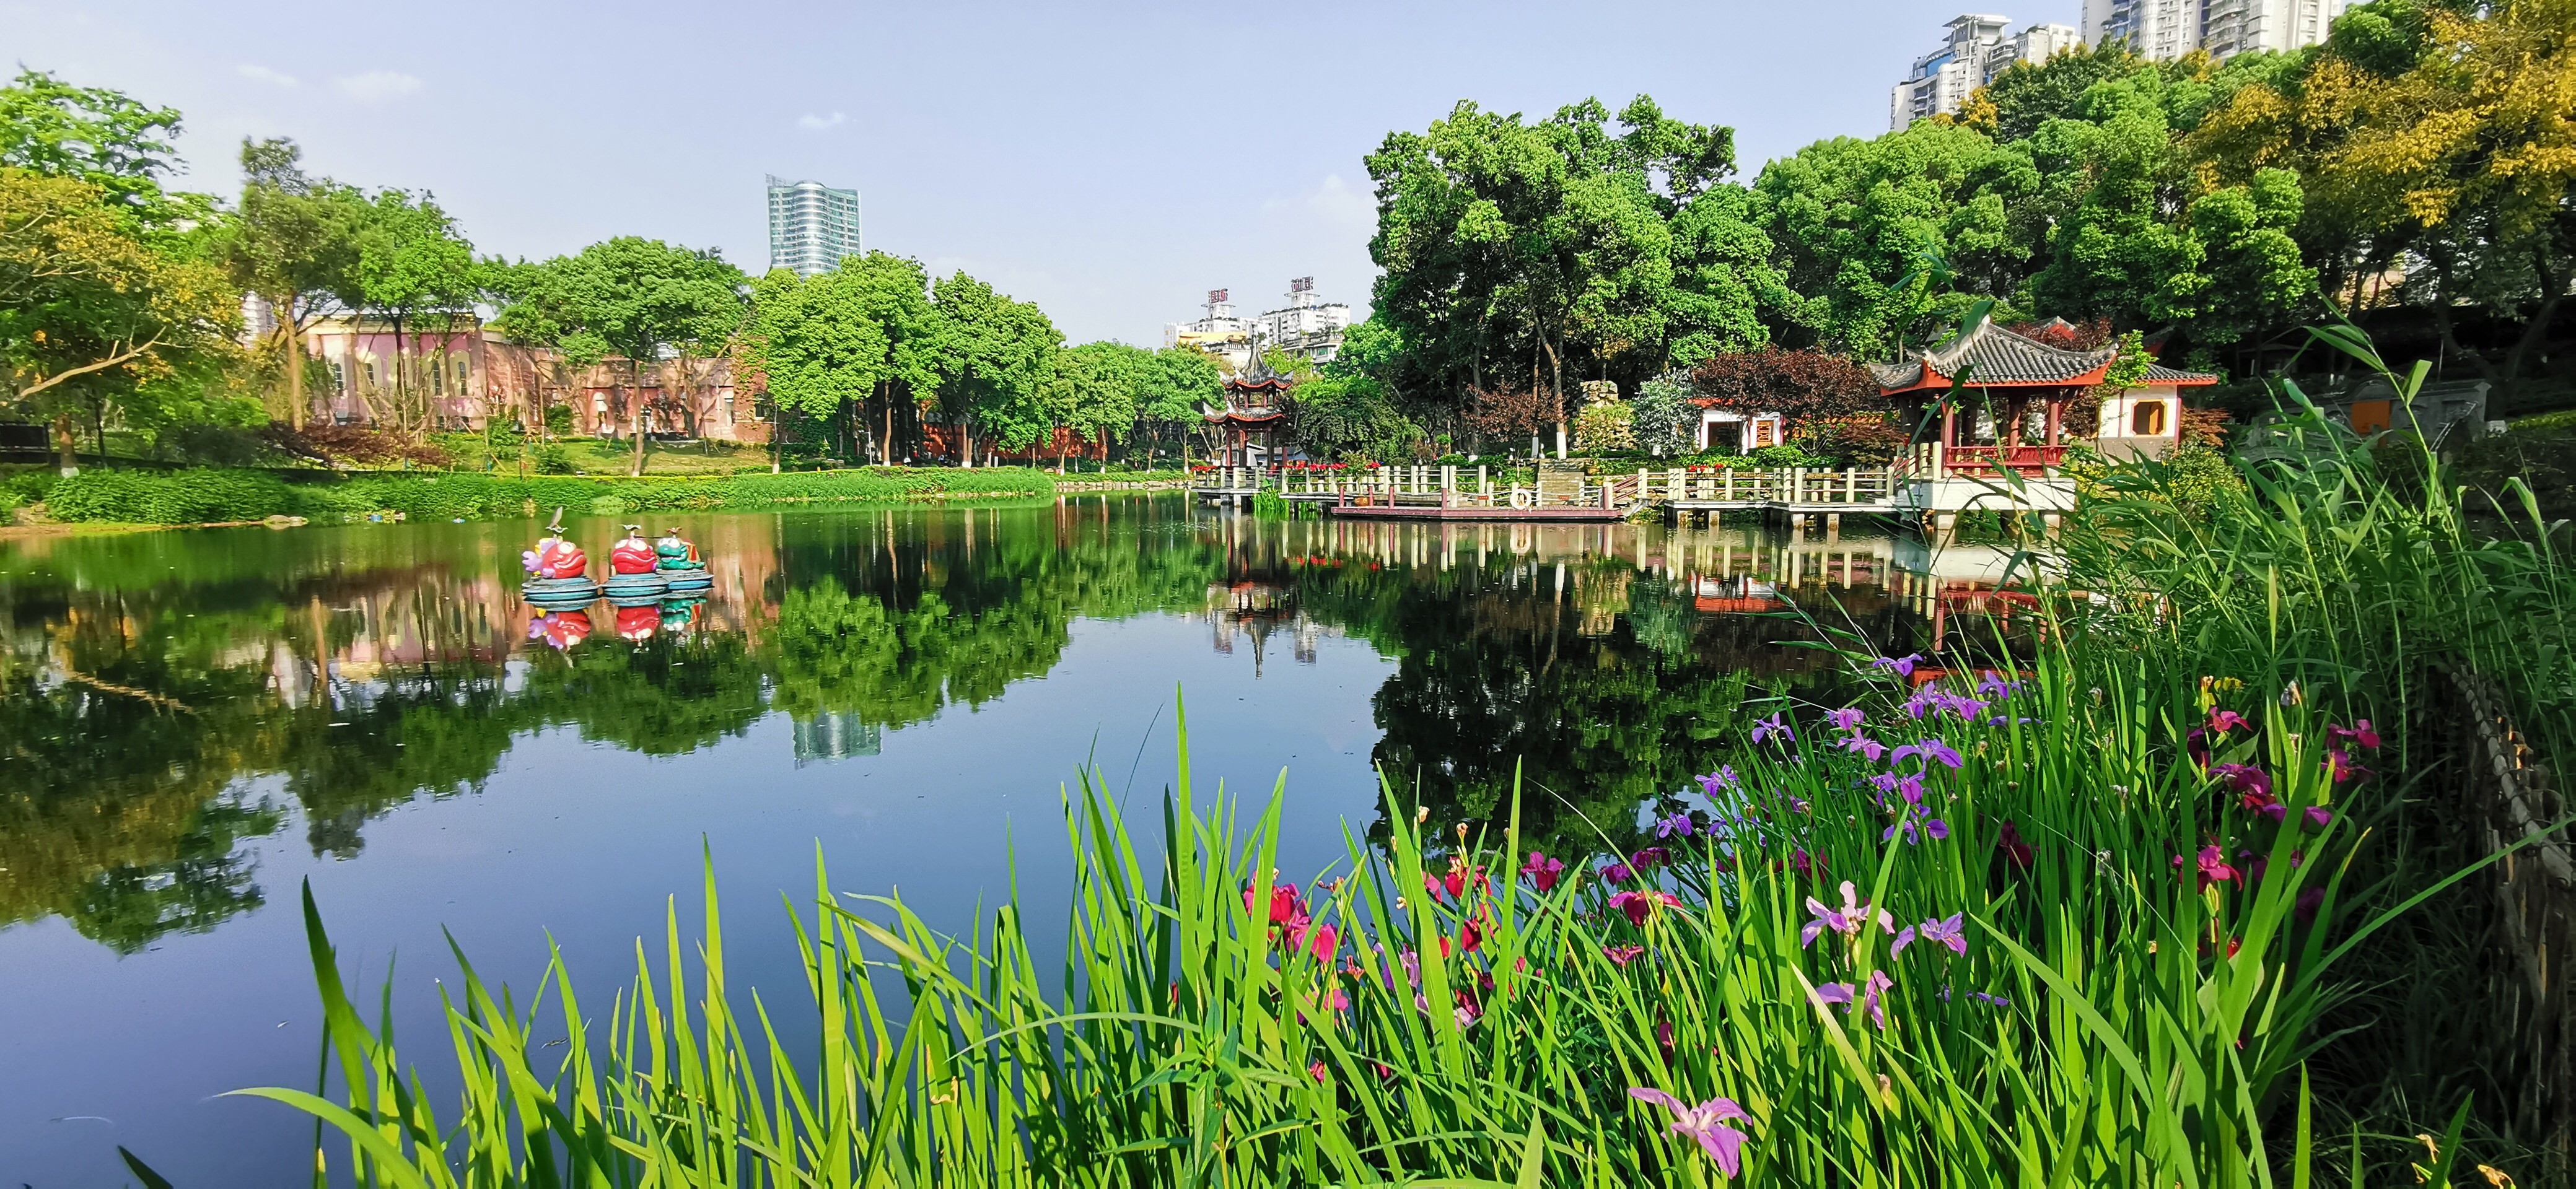 重庆沙坪公园好玩吗,重庆沙坪公园景点怎么样